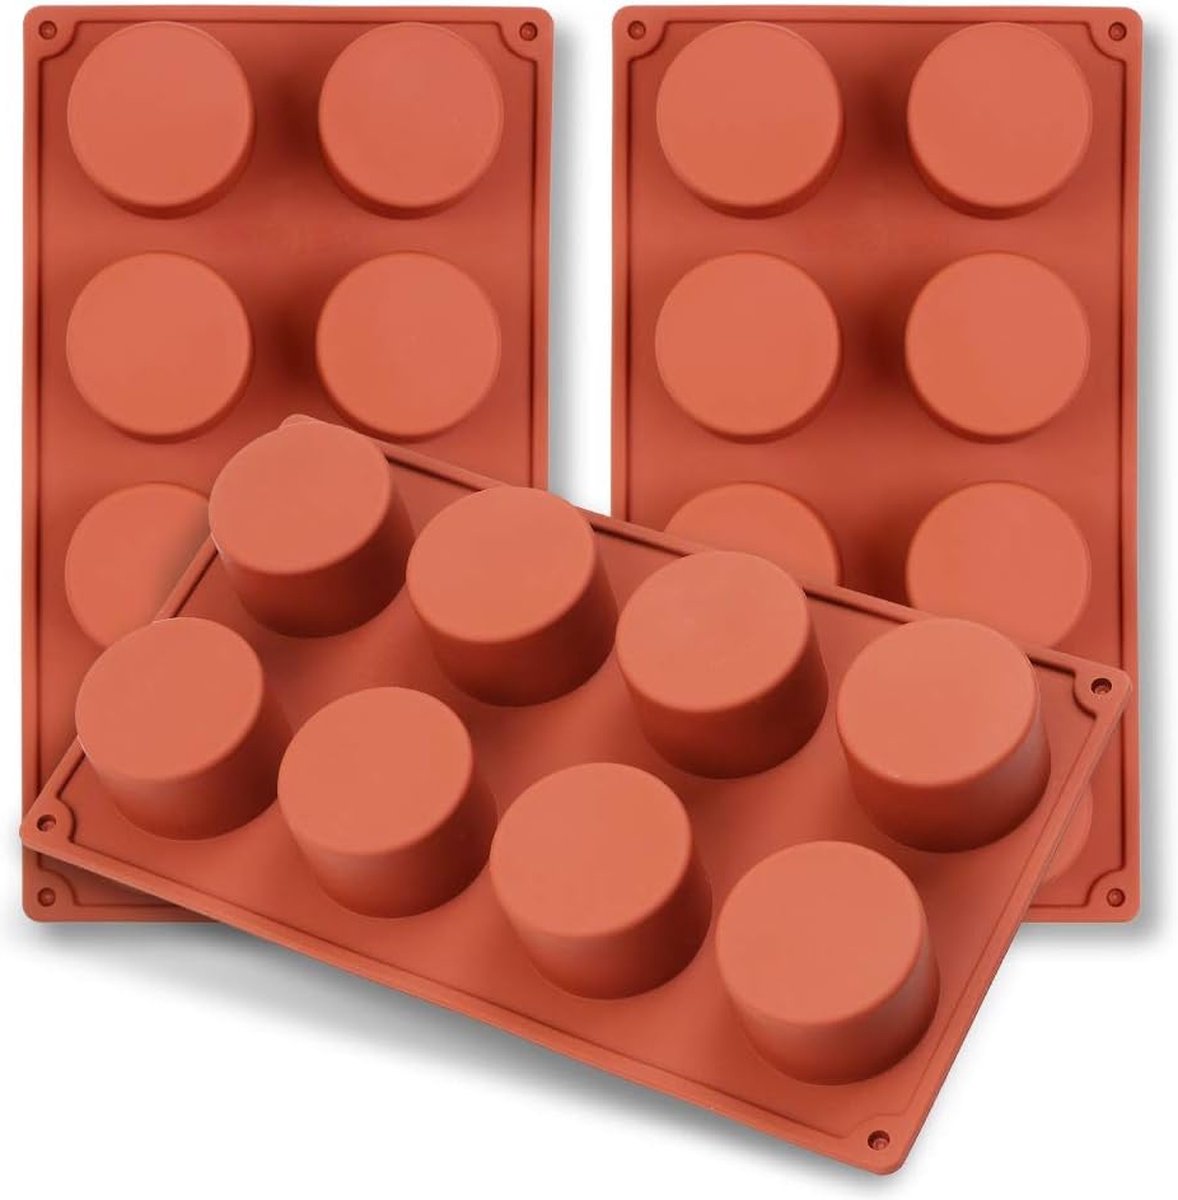 Cilinder-siliconenvorm met 8 holtes, 3 pakjes cilindervormen voor het maken van handgemaakte zeep, chocolade, zeepkaarsen en geleibruin